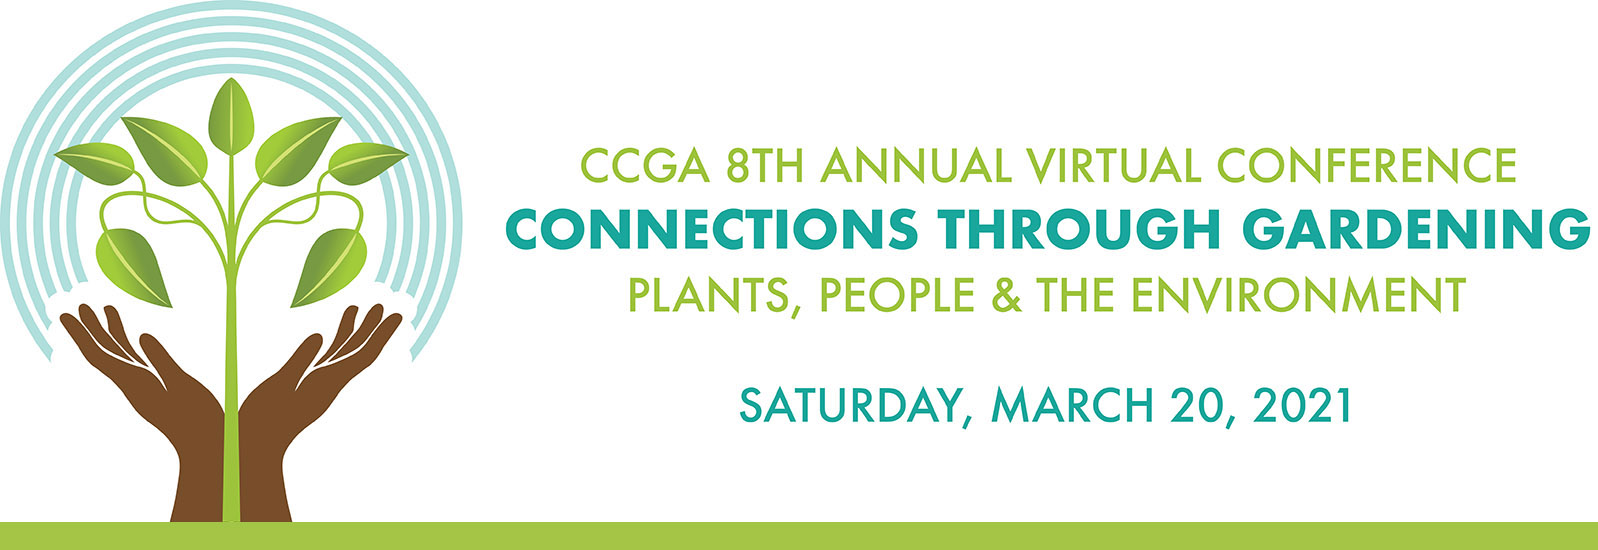 CCGA 8th Annual Virtual Conference